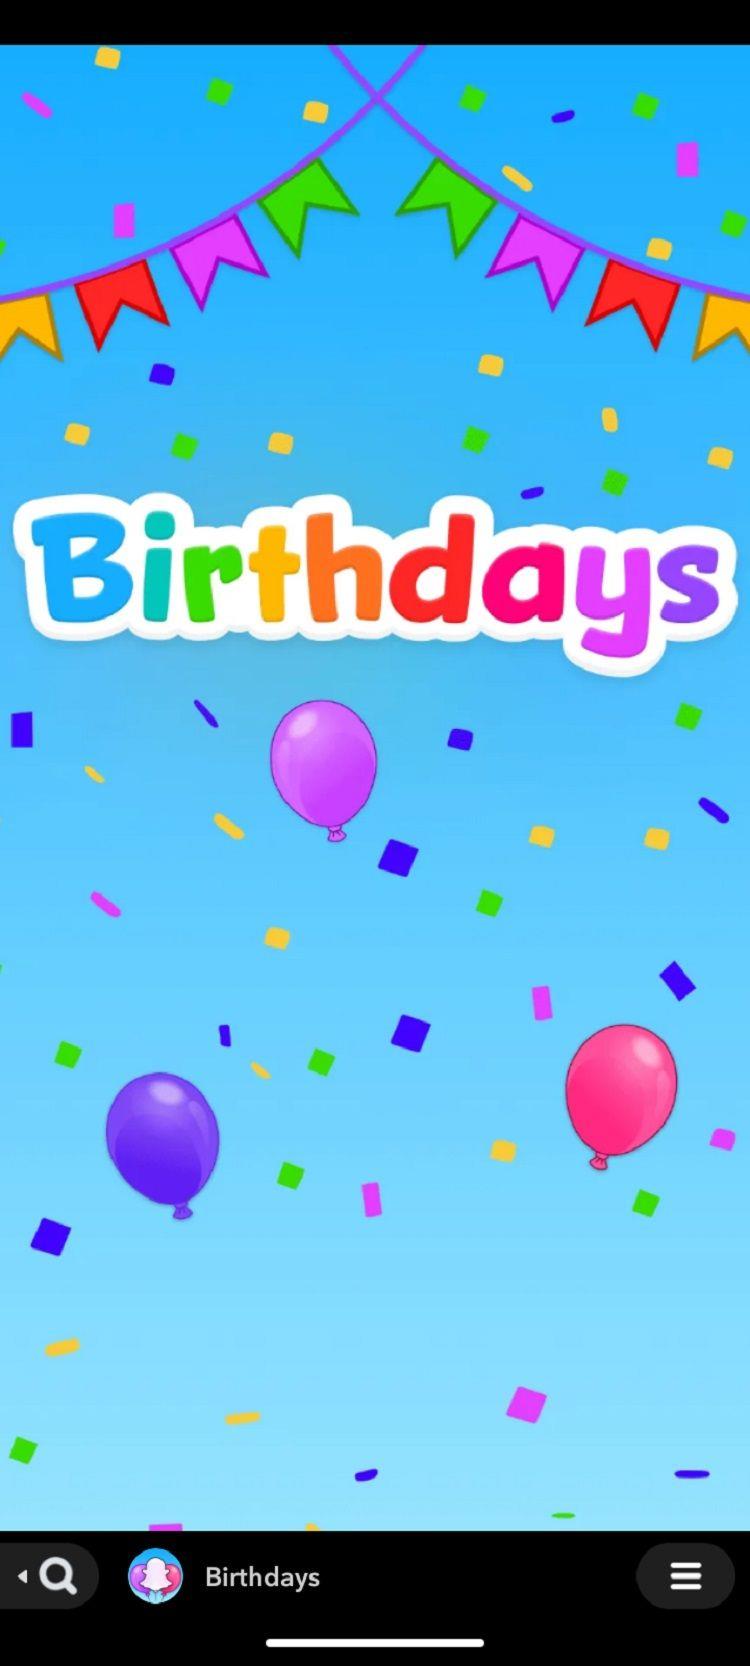 De Snapchat Birthdays Mini maakt het vieren met vrienden leuker